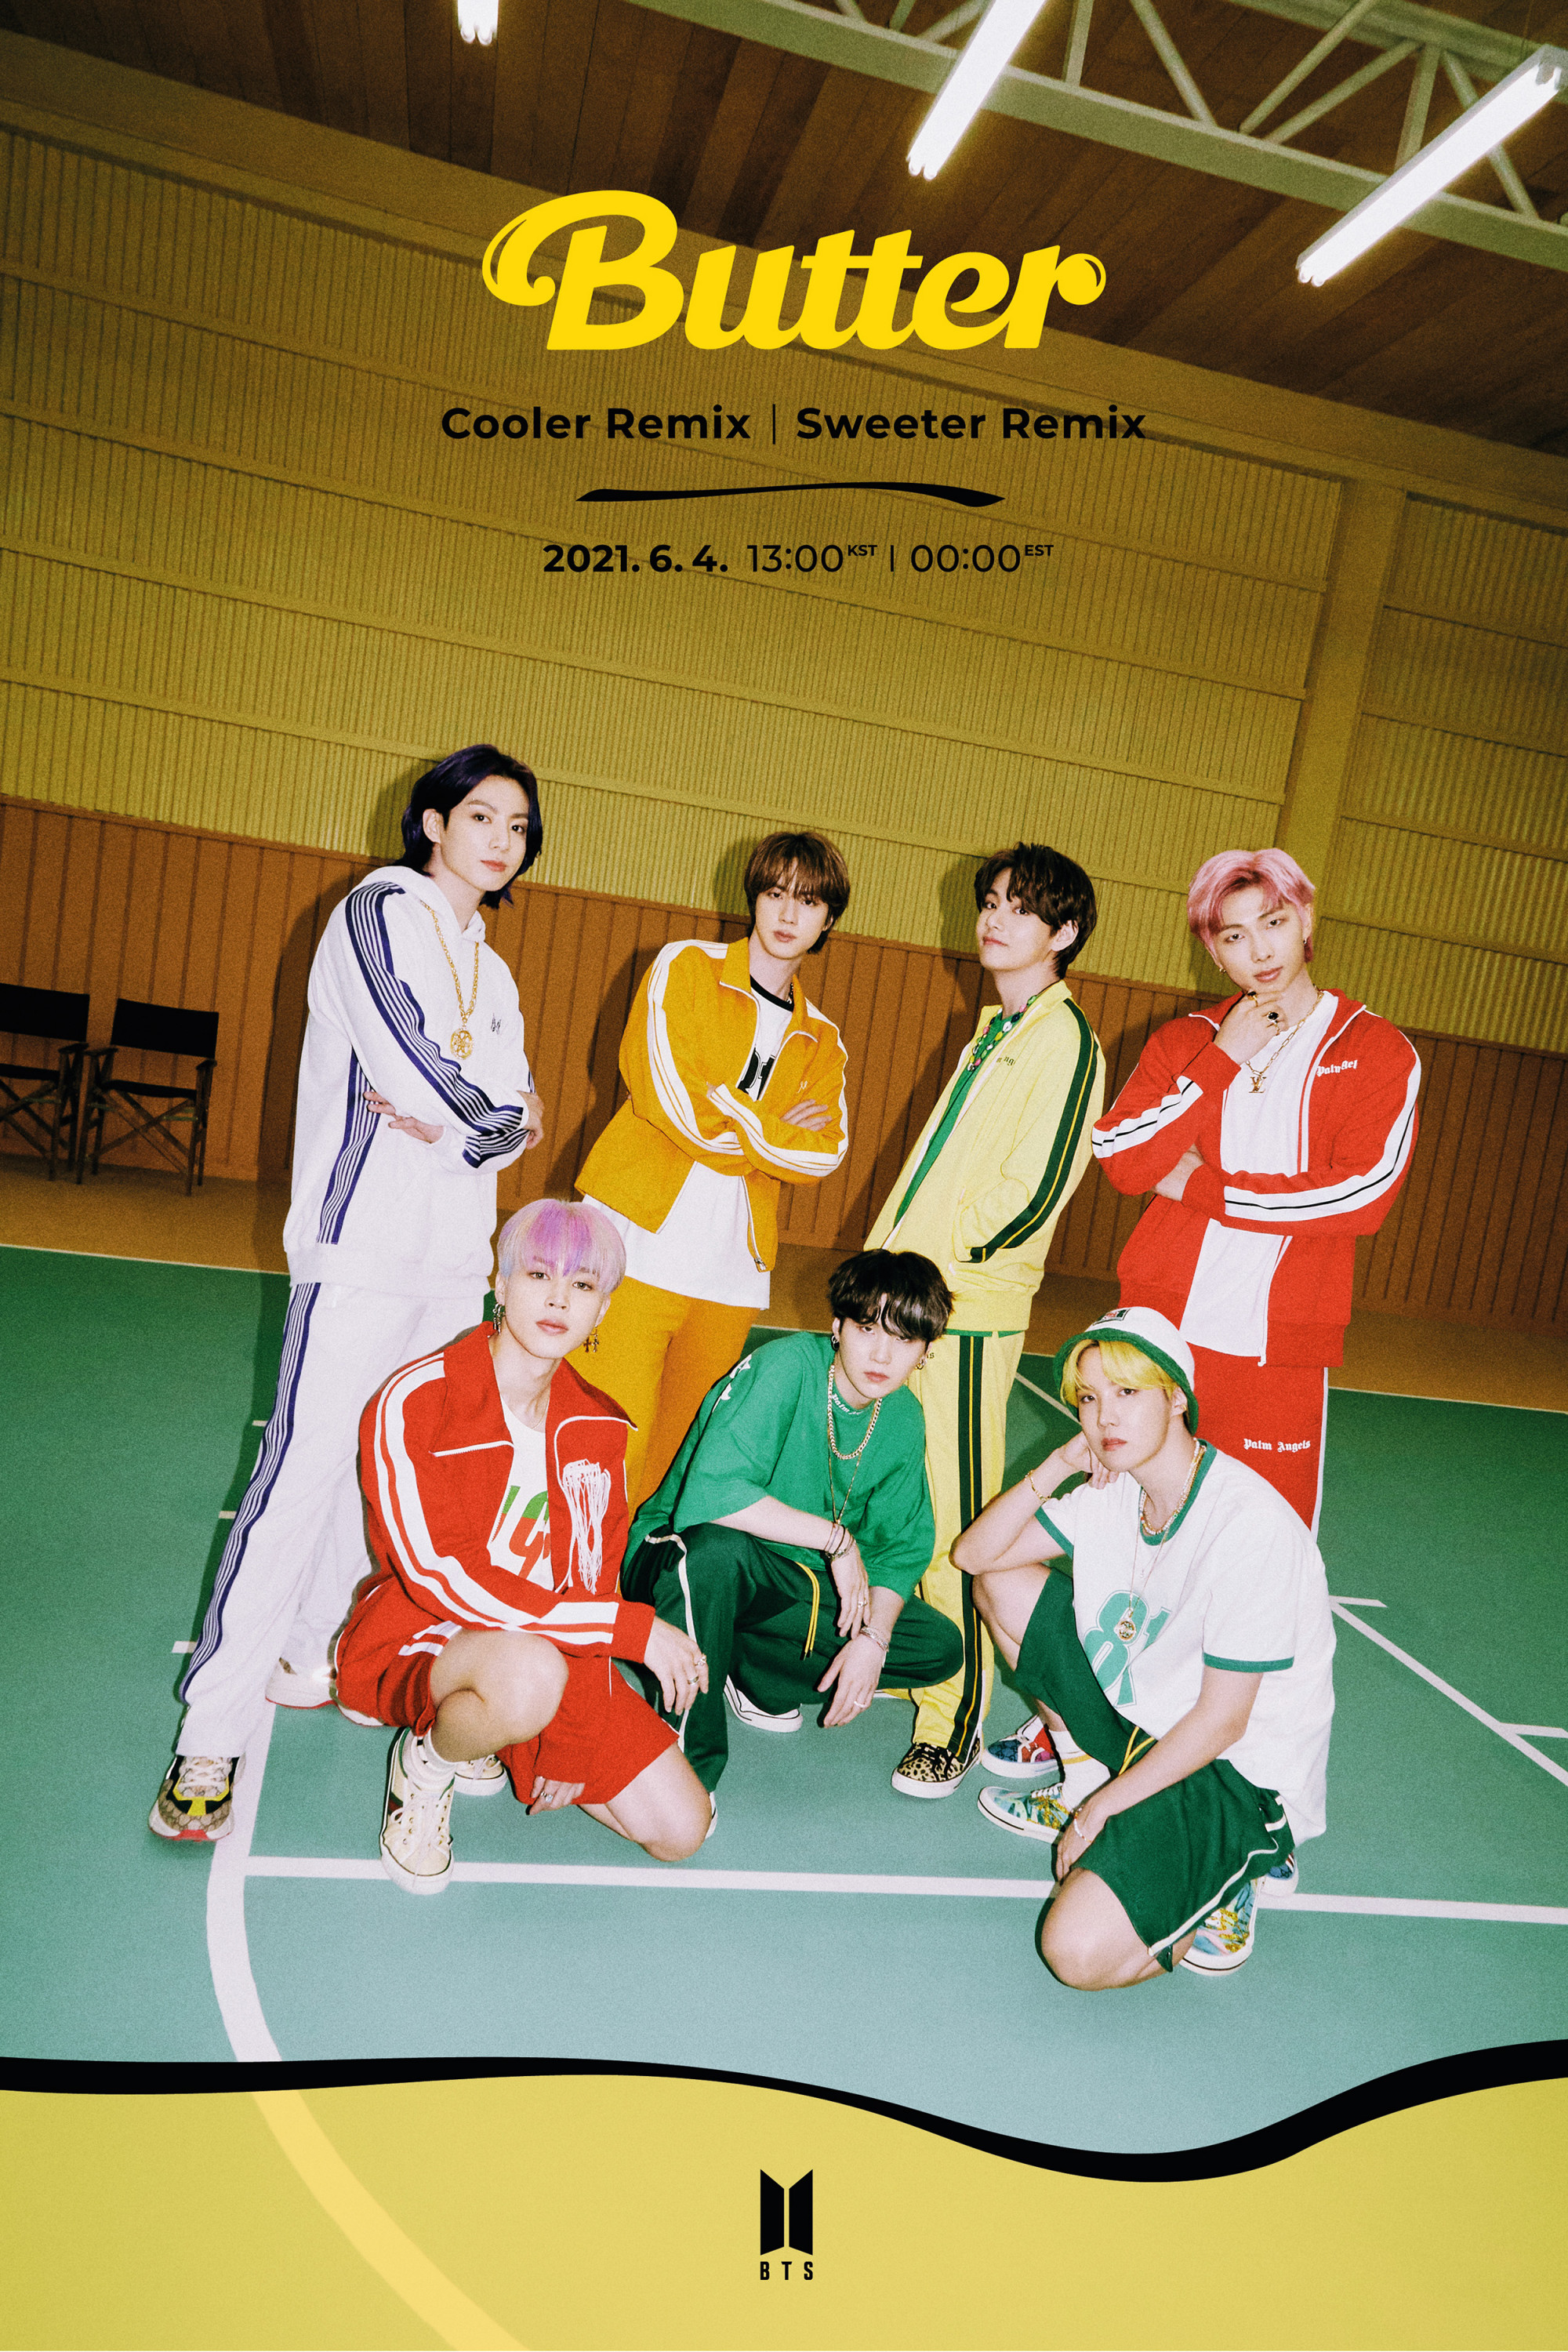 BTS Butter Remix (Sweeter / Cooler Version) Teaser Photos